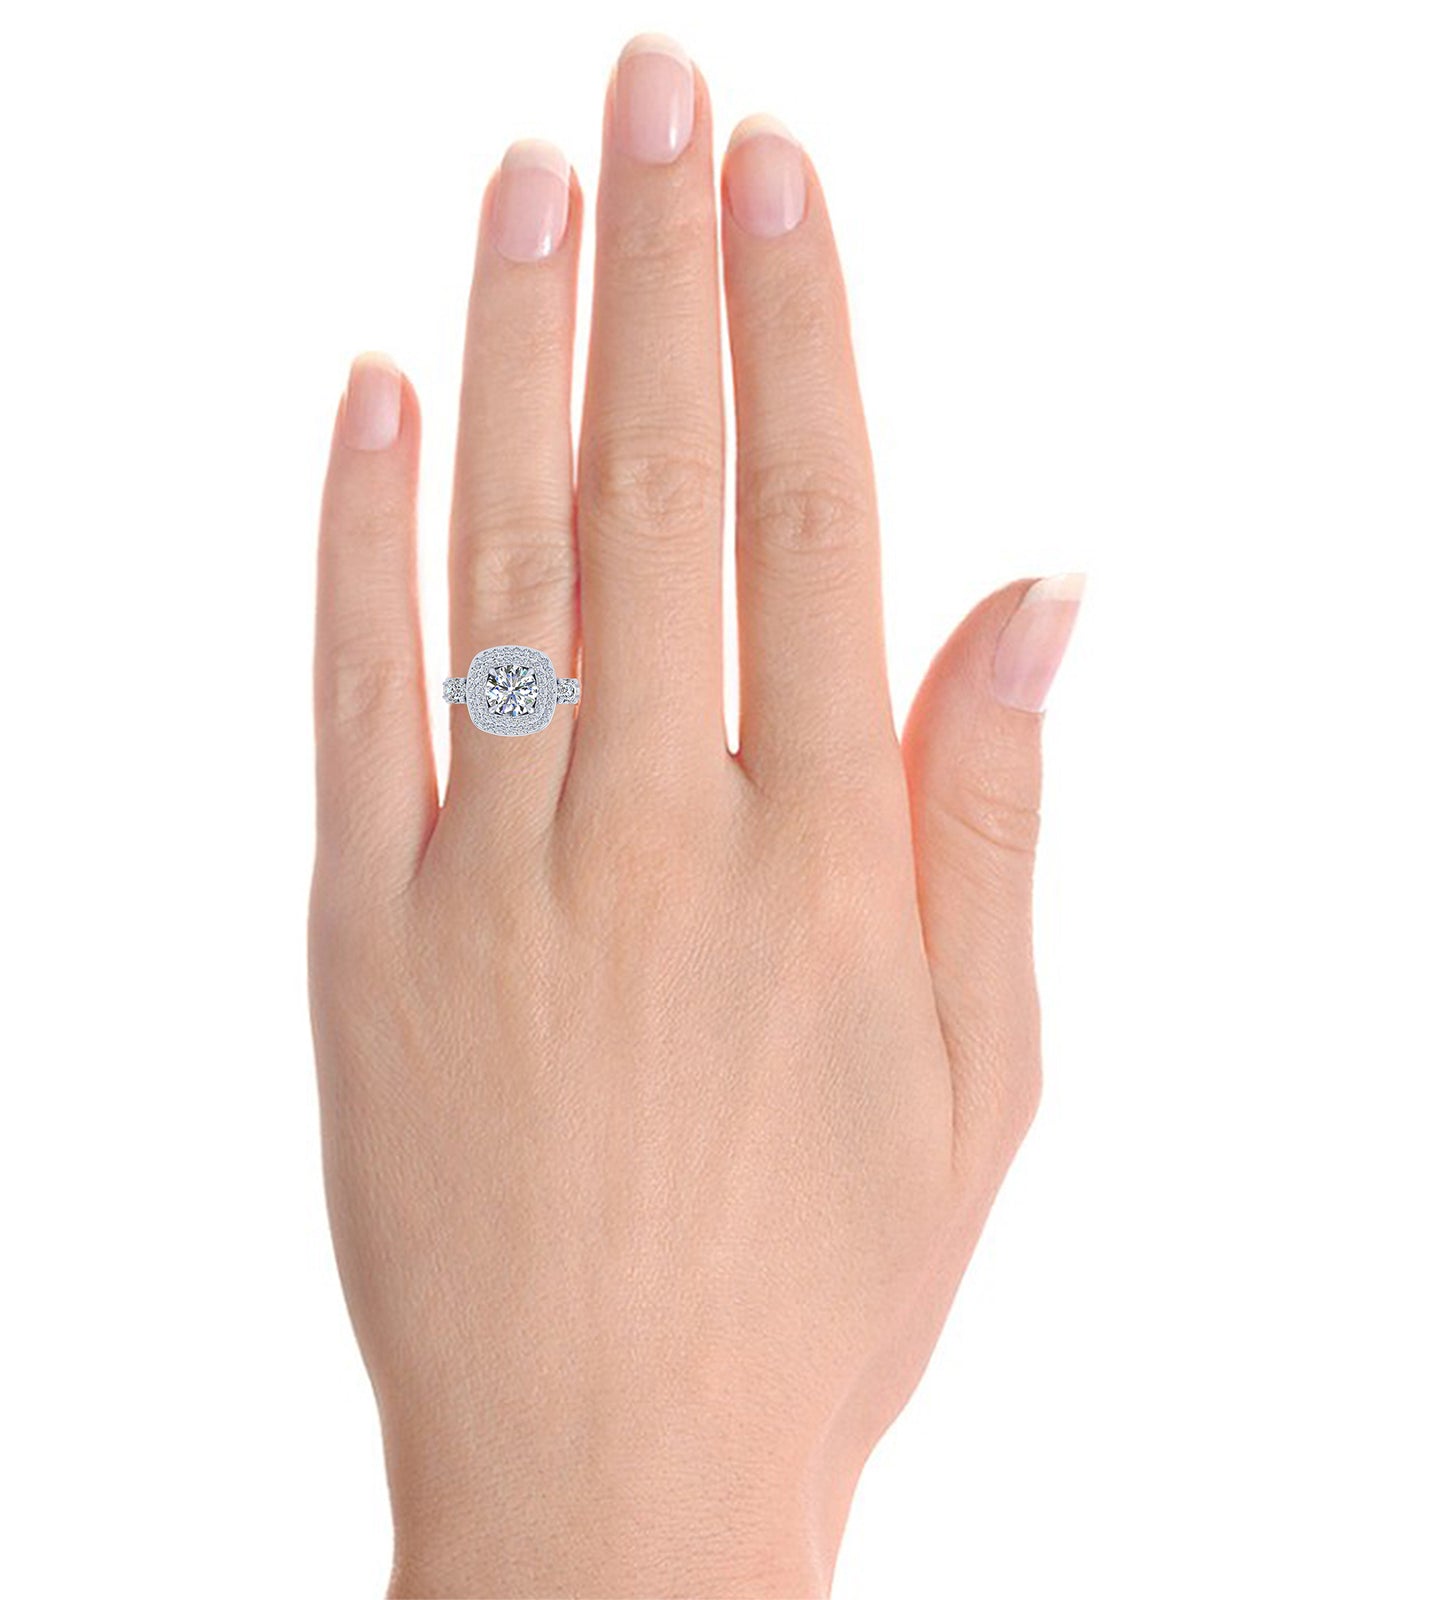 Double Euro-Style Royal Halo Diamond Engagement Ring